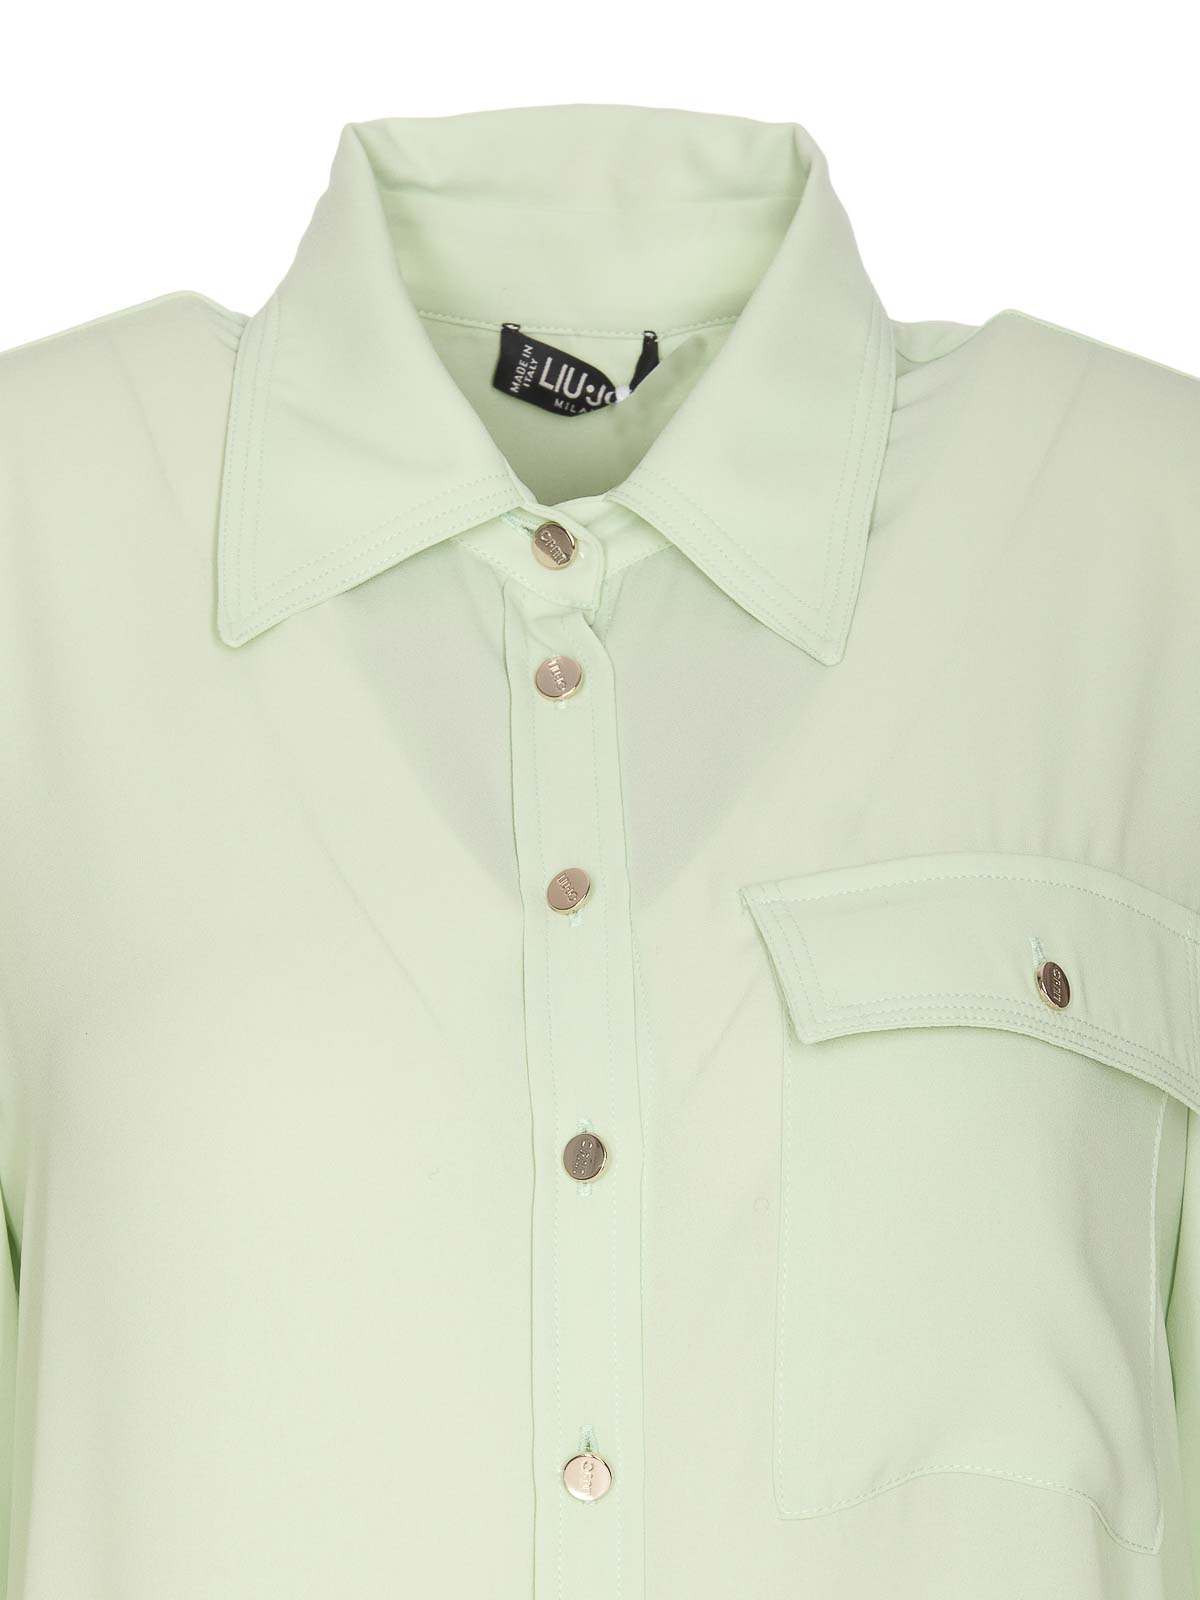 Shop Liu •jo Green Shirt Frontal Buttons Long Sleeves